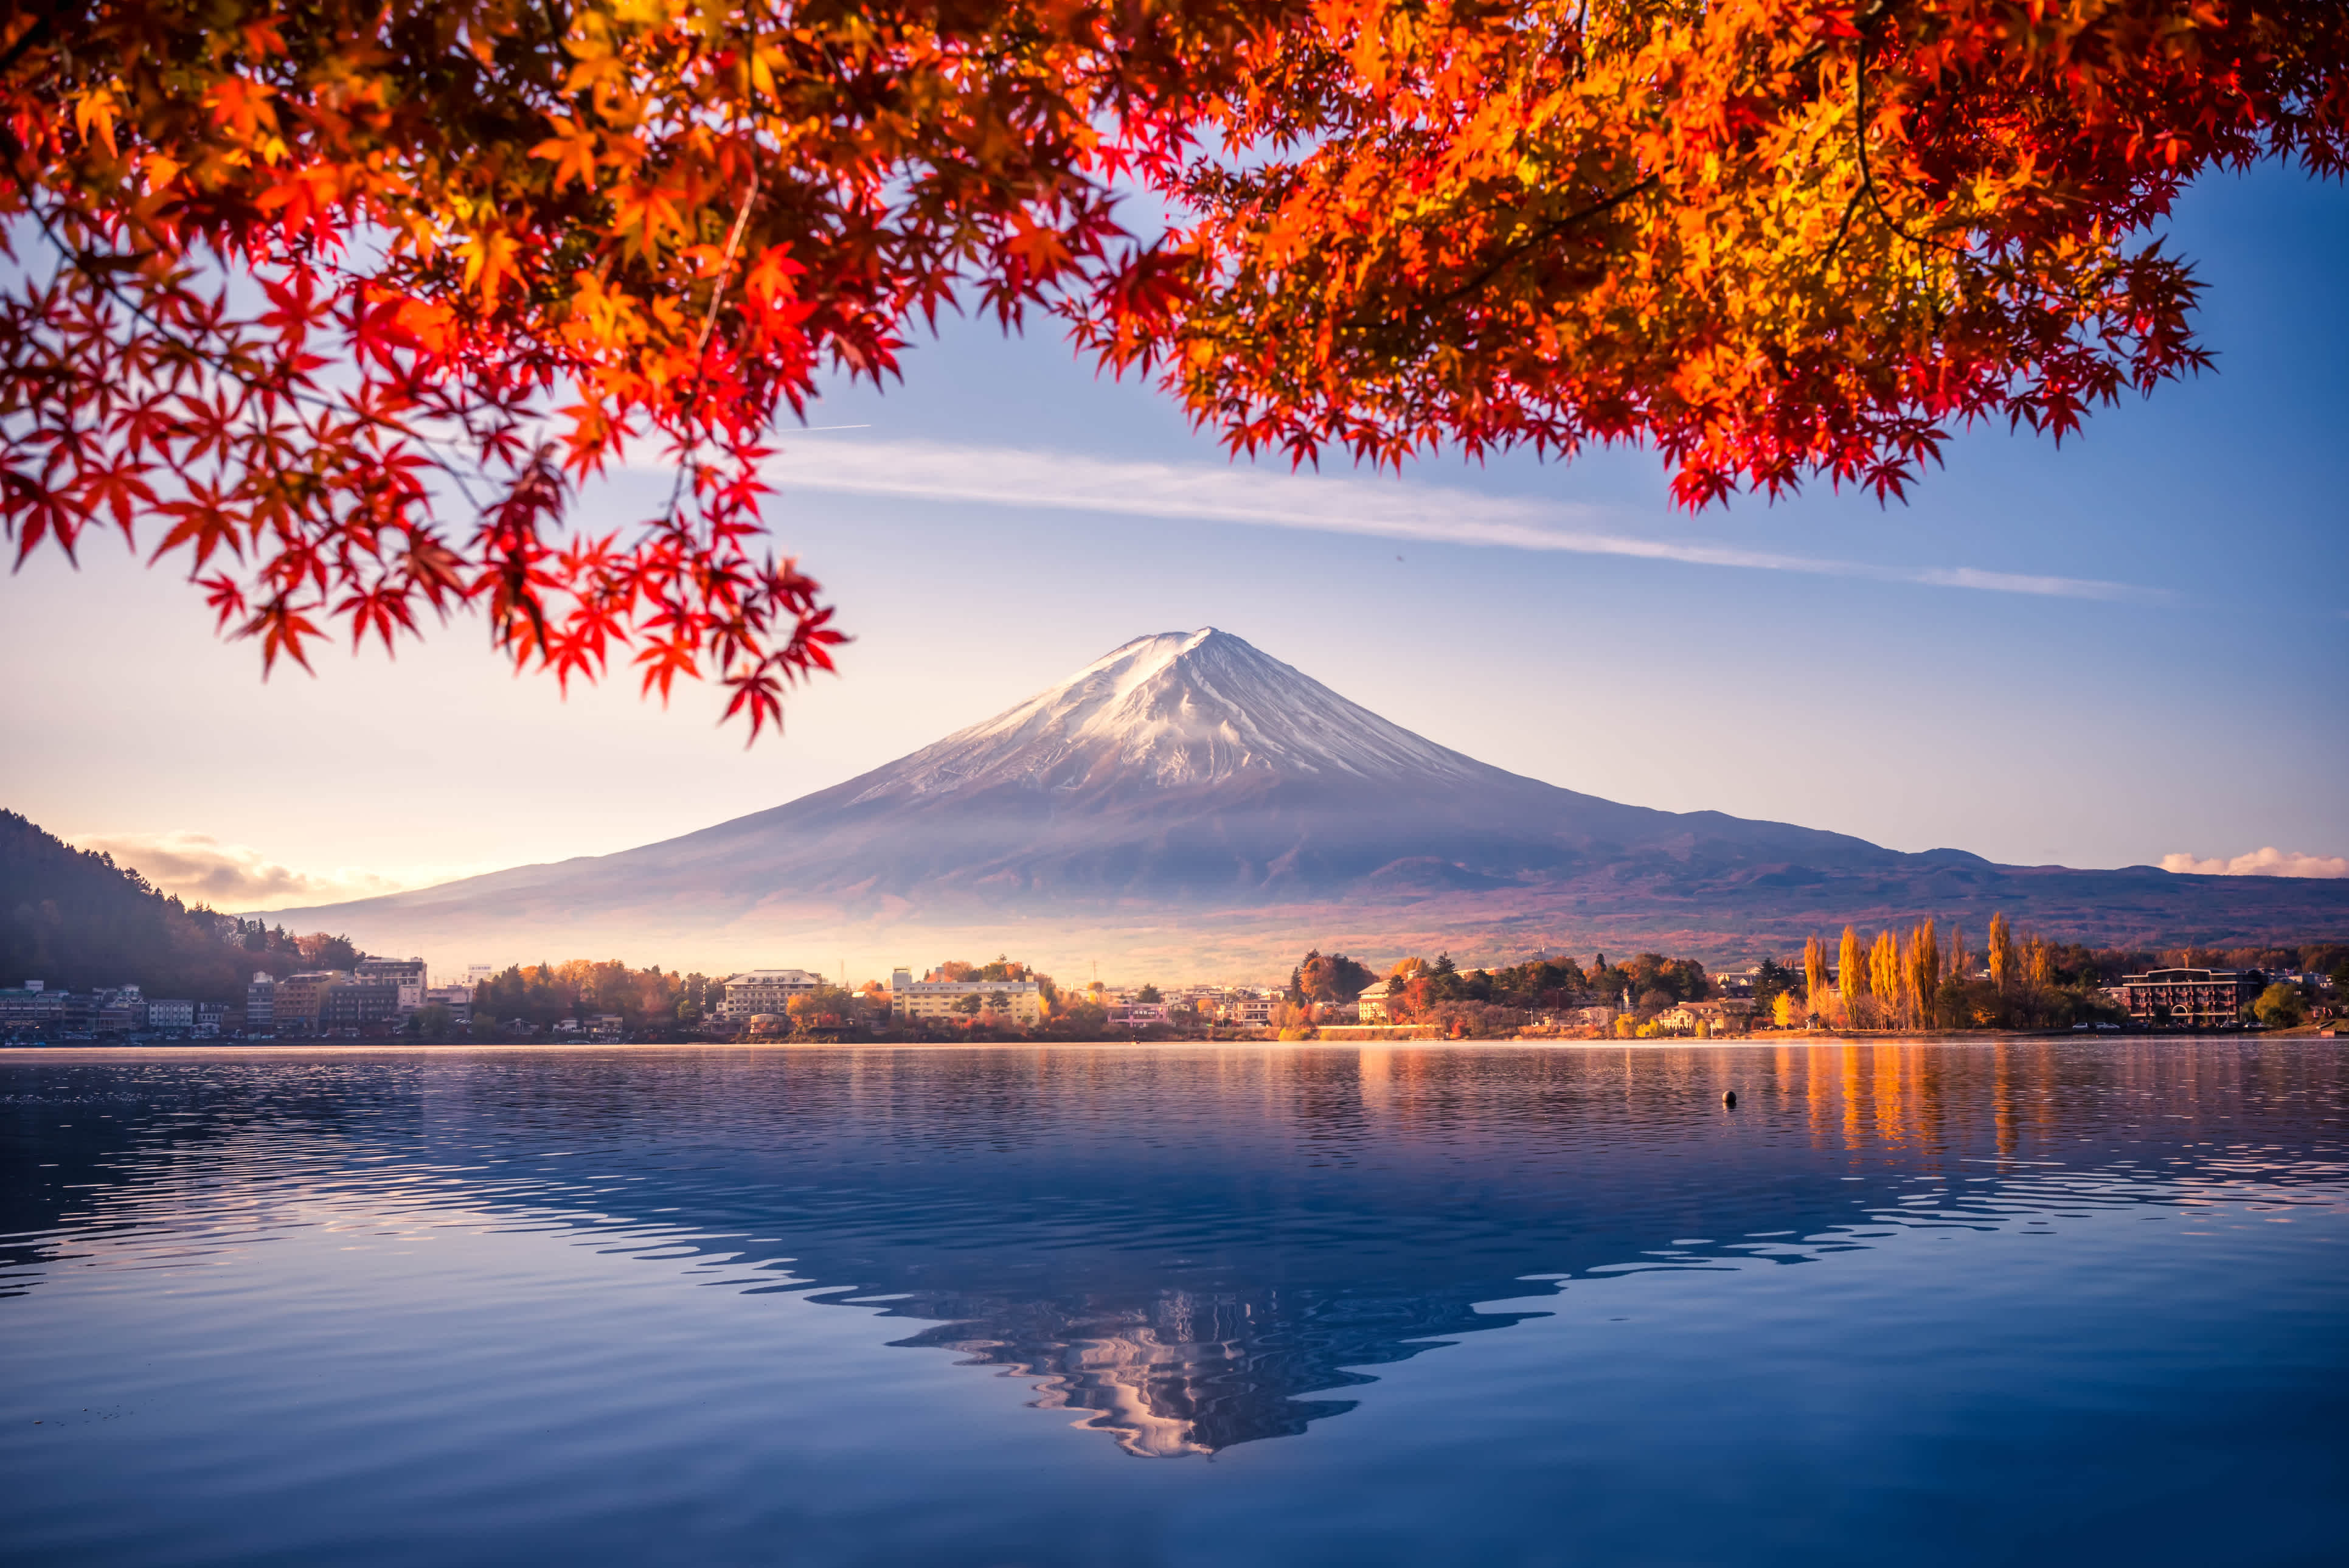 Le Mont Fuji et ses neiges éternelles photographié pendant une journée d'automne au Japon.